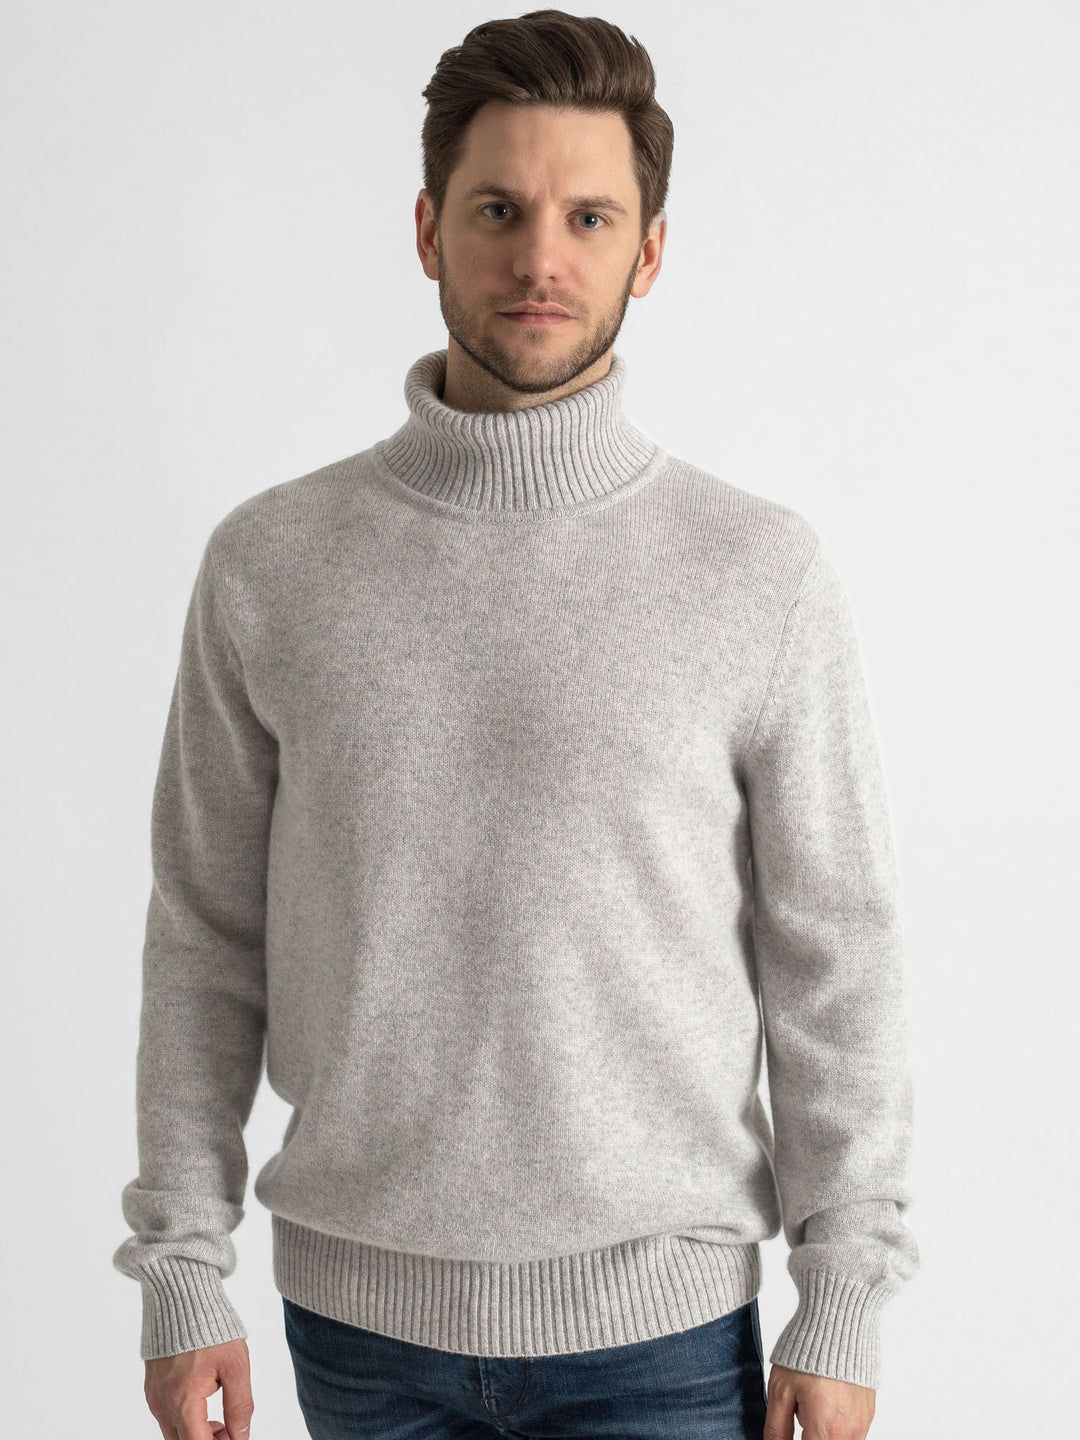 Turtle neck cashmere sweater. 100% cashmere. Scandinavian design. Color: Light grey